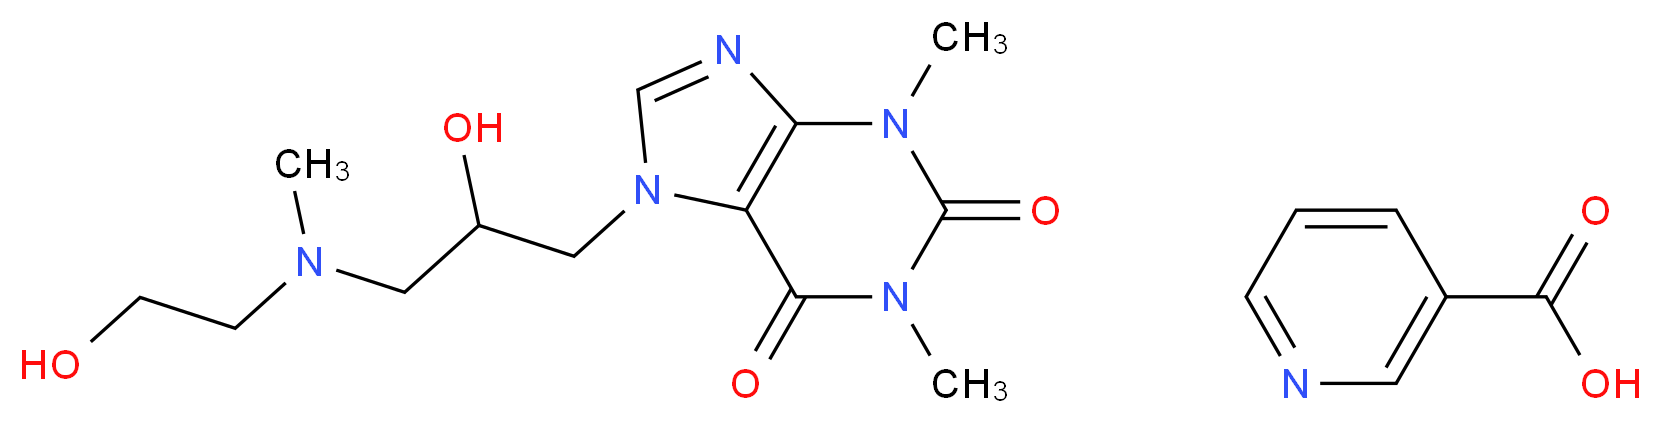 437-74-1 molecular structure